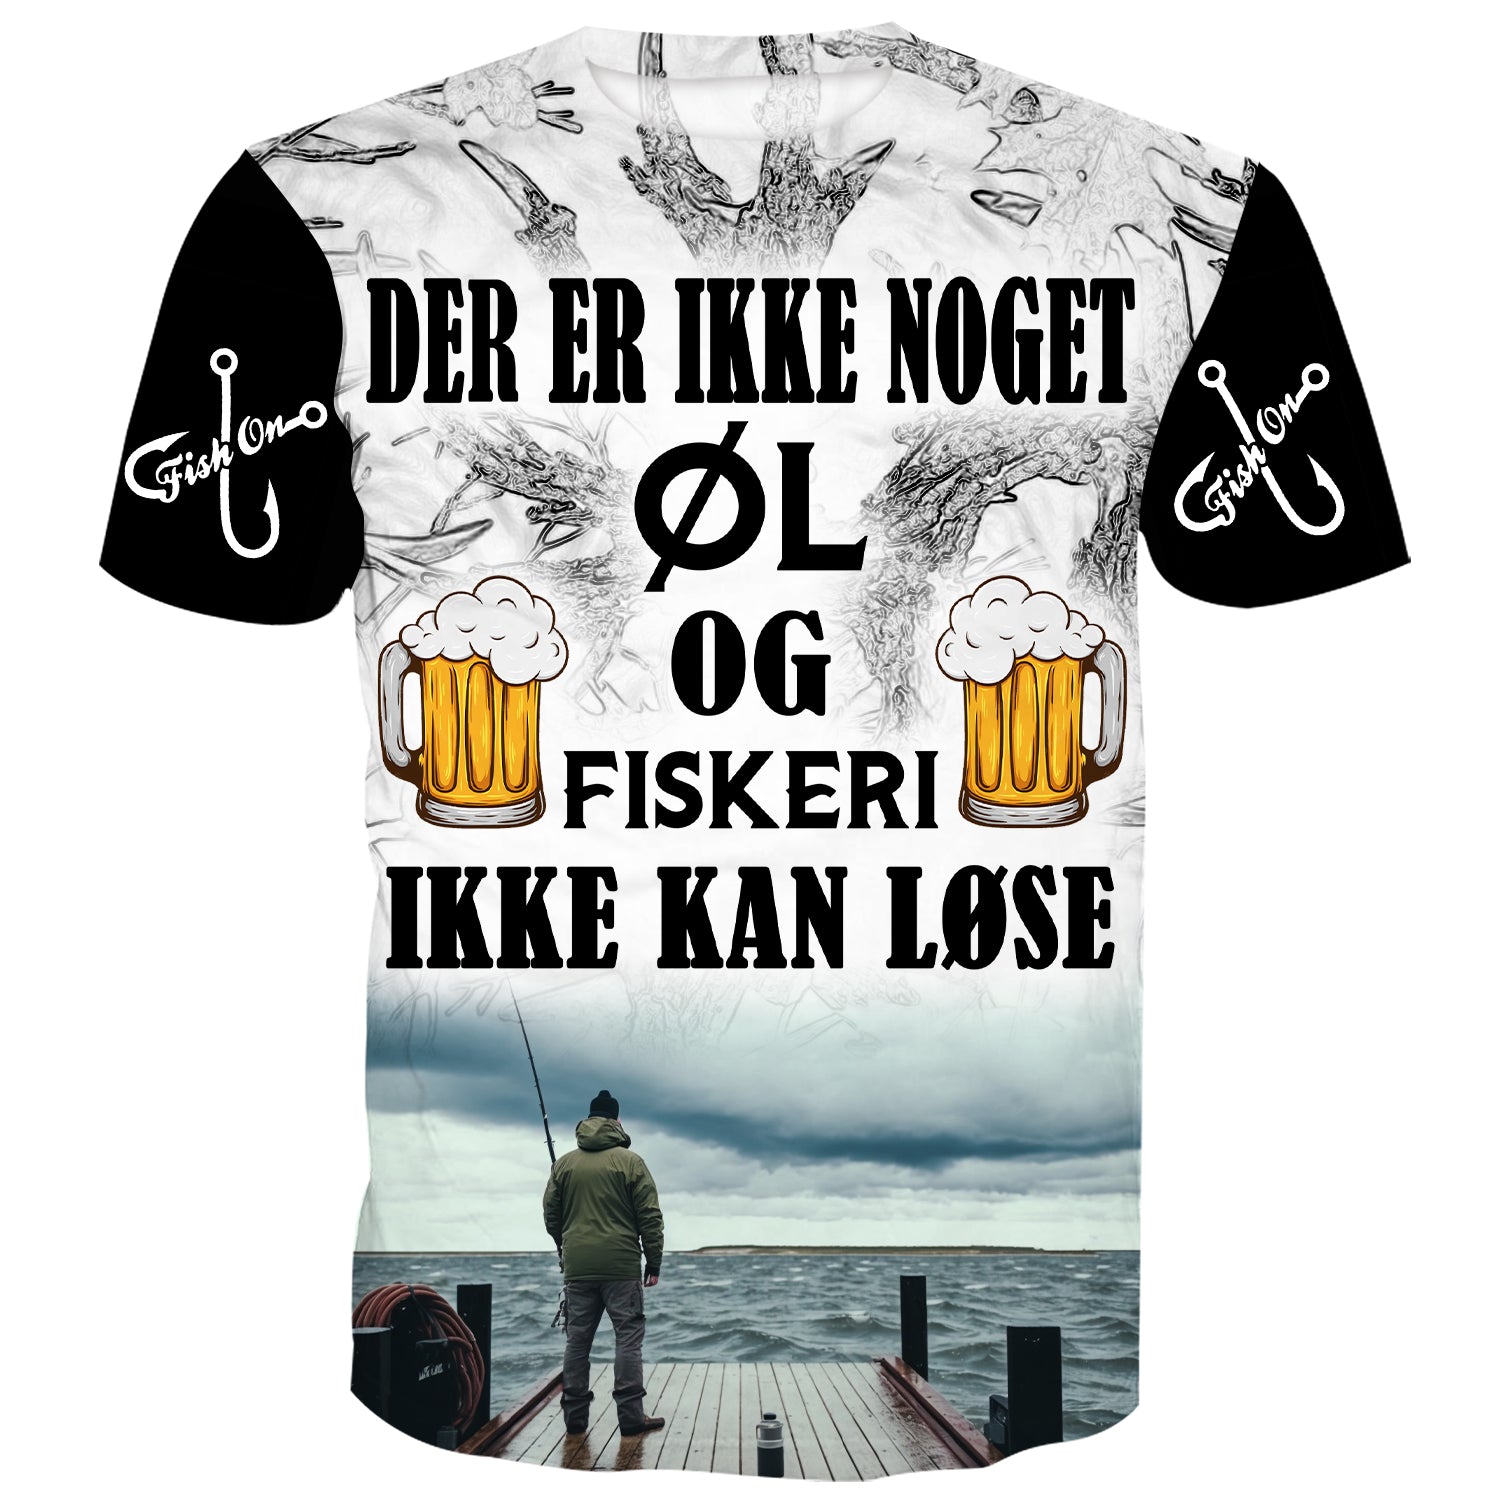 Der er ikke noget Øl og Fiskeri ikke kan fikse - Jyllands Saltvands T-Shirt